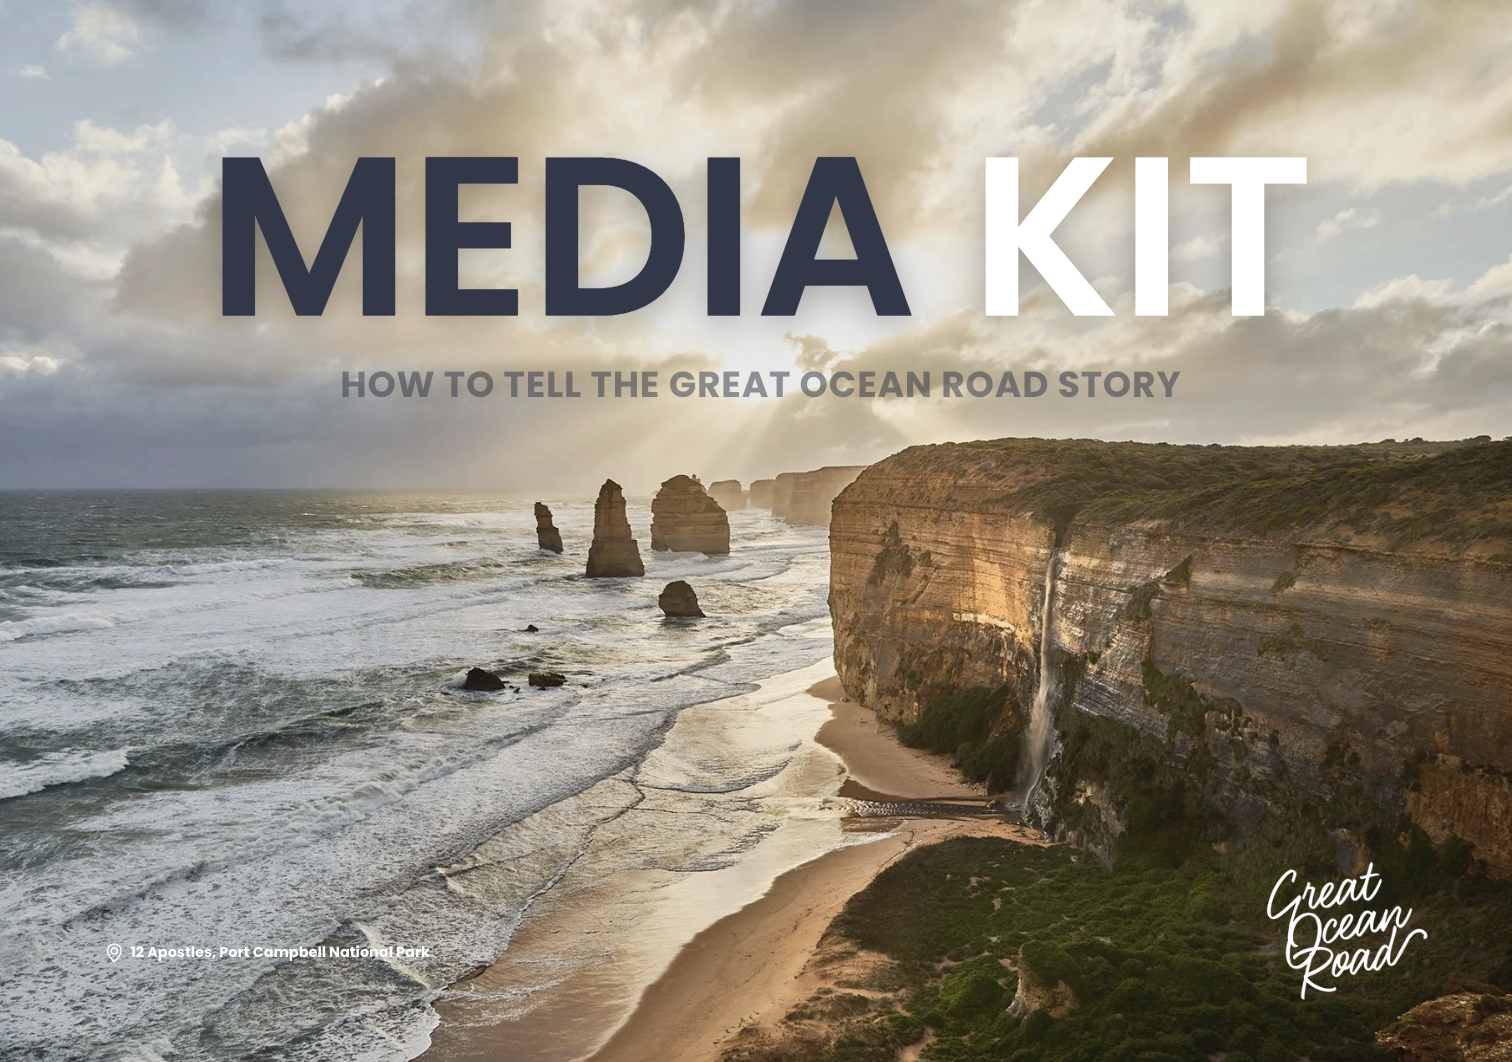 GORRT Media Kit